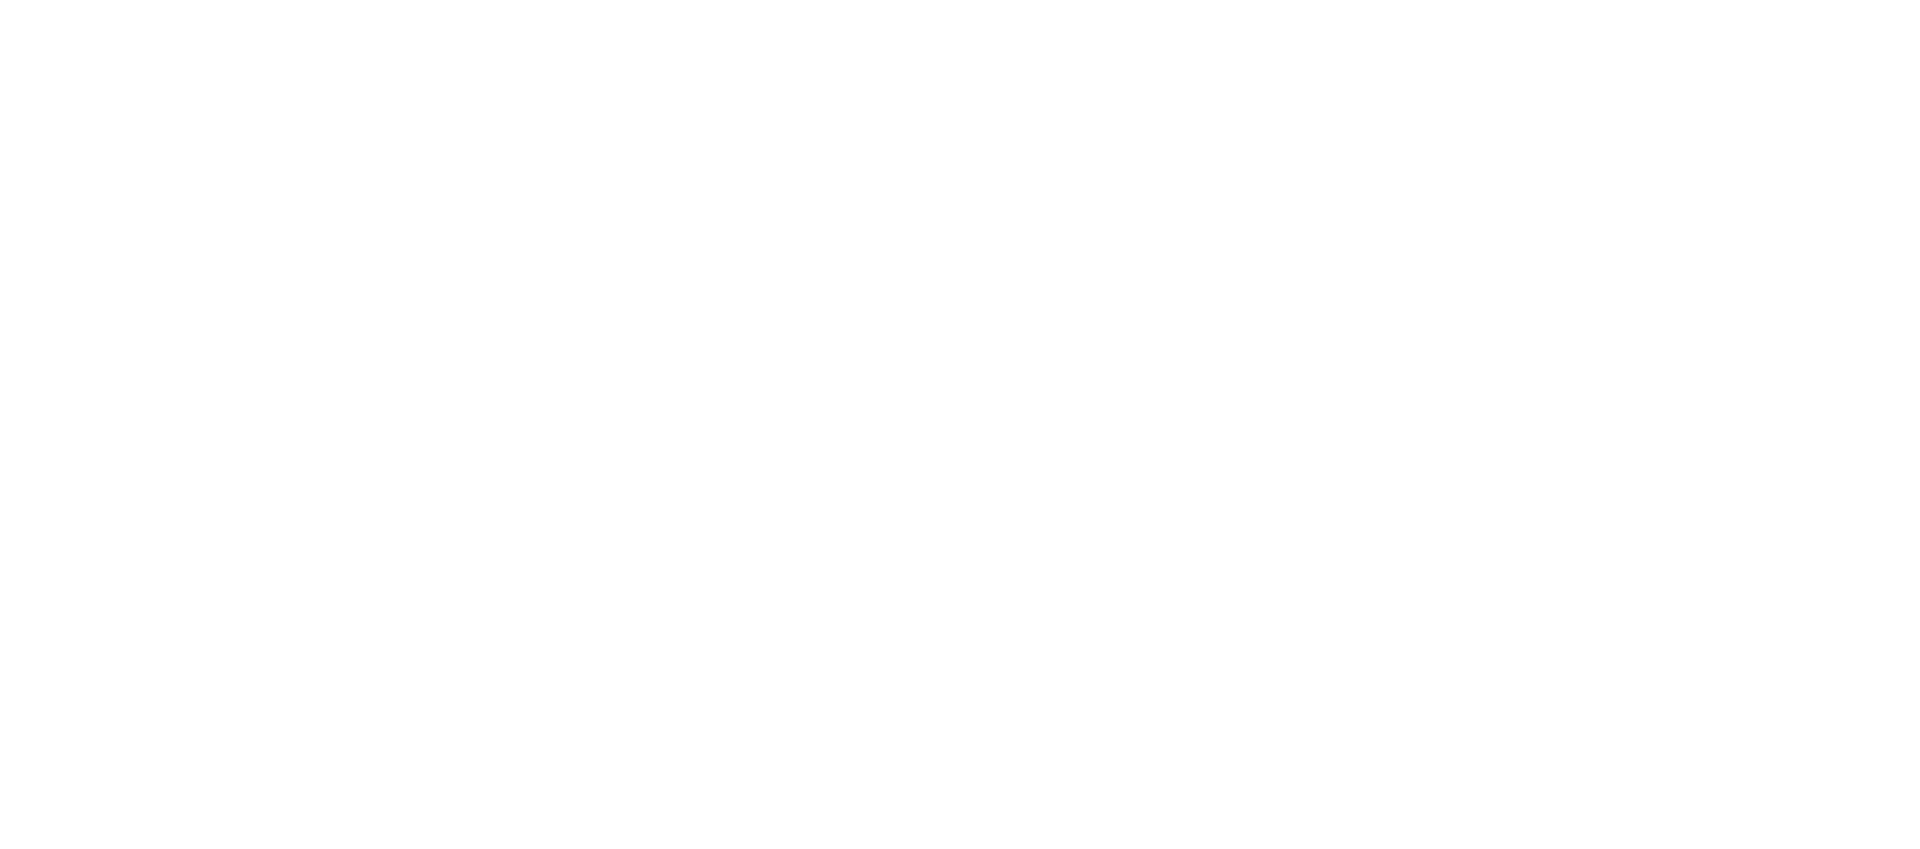 Seniorcarecenters Logo - Saginaw Senior Care & Rehab Center | A NexCare Managed Community